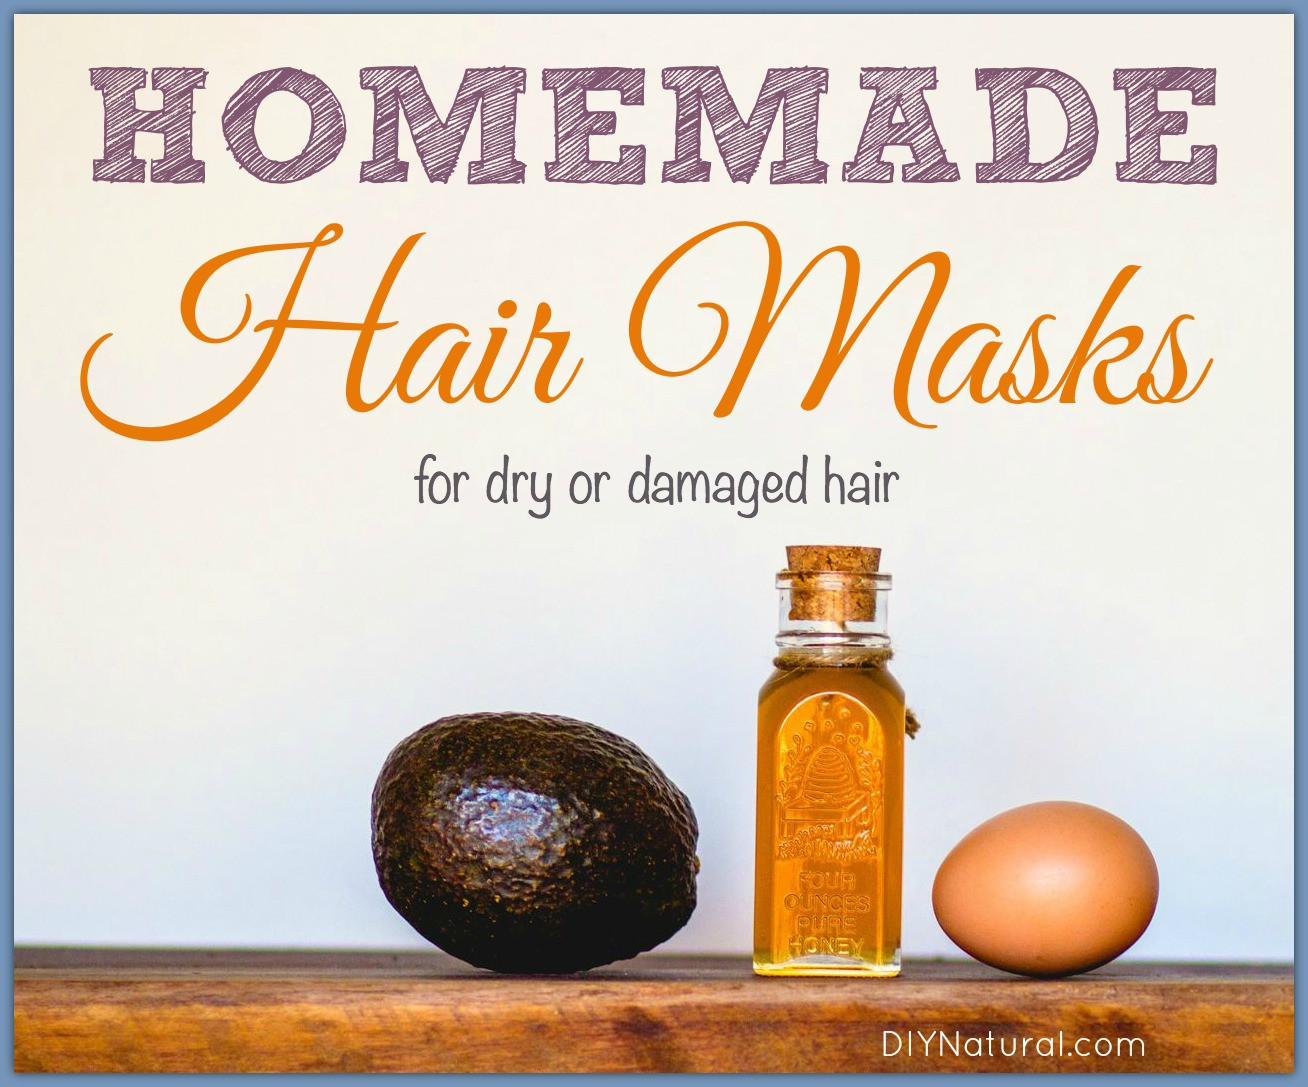 Hair Mask For Damaged Hair DIY
 Homemade Hair Masks for Dry or Damaged Hair